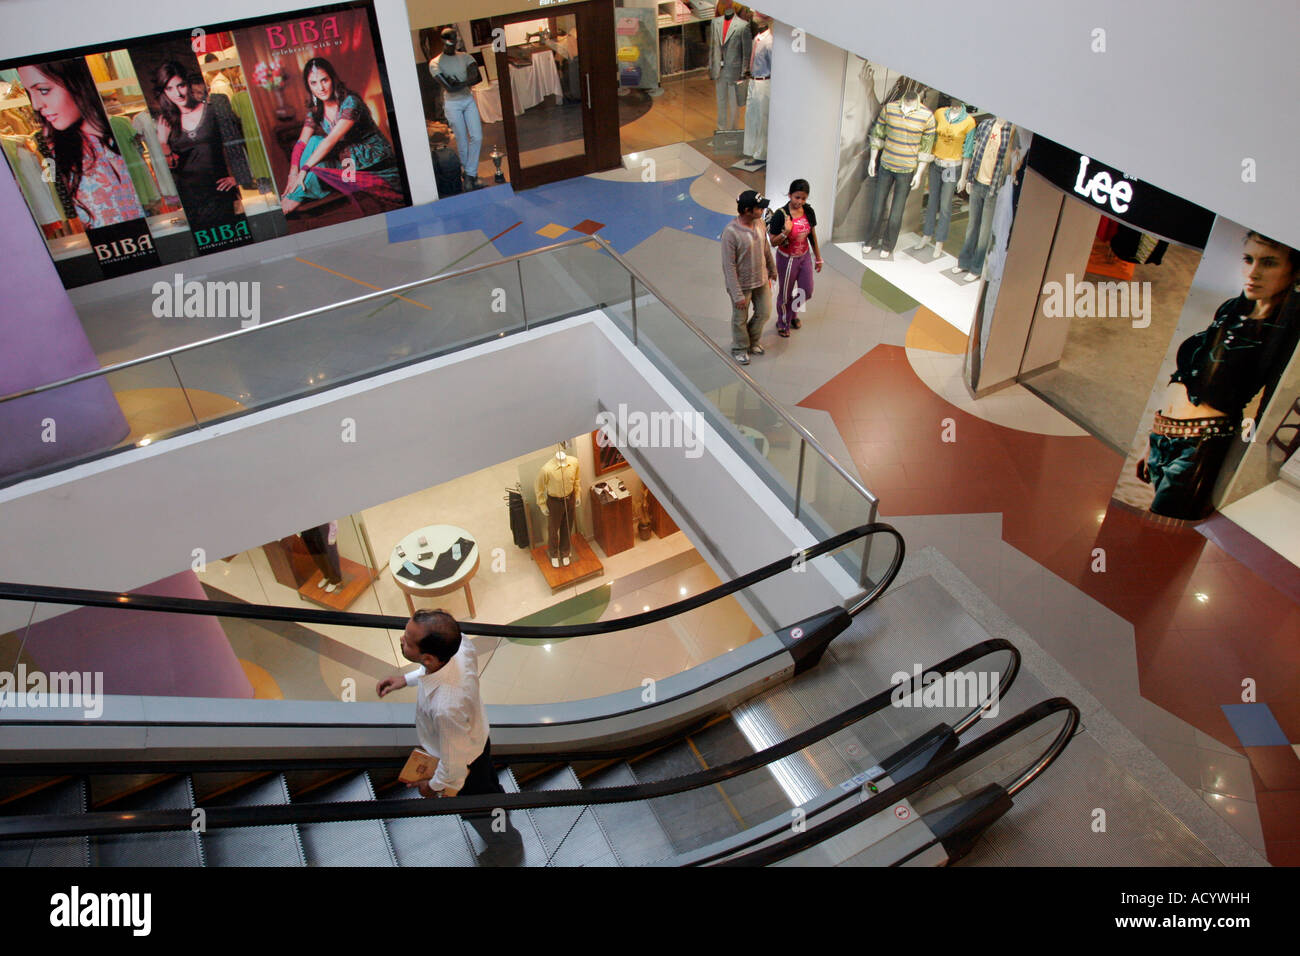 Un centre commercial moderne de Salt Lake City en dehors de Kolkata (Calcutta) en Inde. Banque D'Images